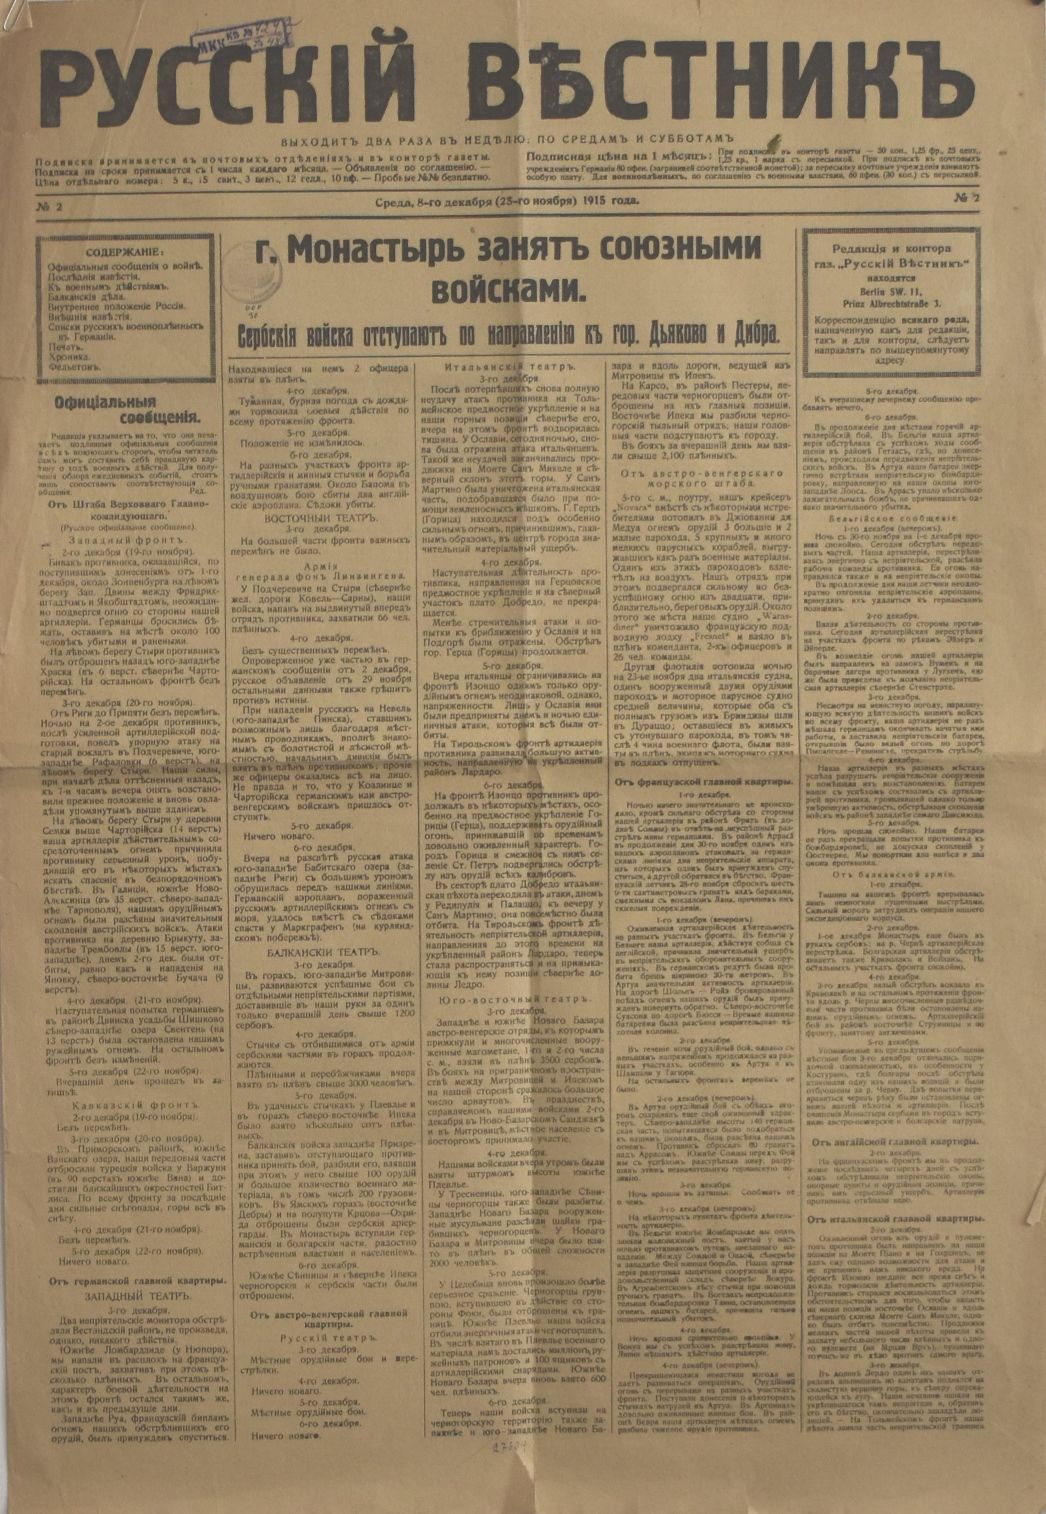 Газета "Русскій вѣстникъ" № 2 від 08 грудня (25 листопада) 1915 року